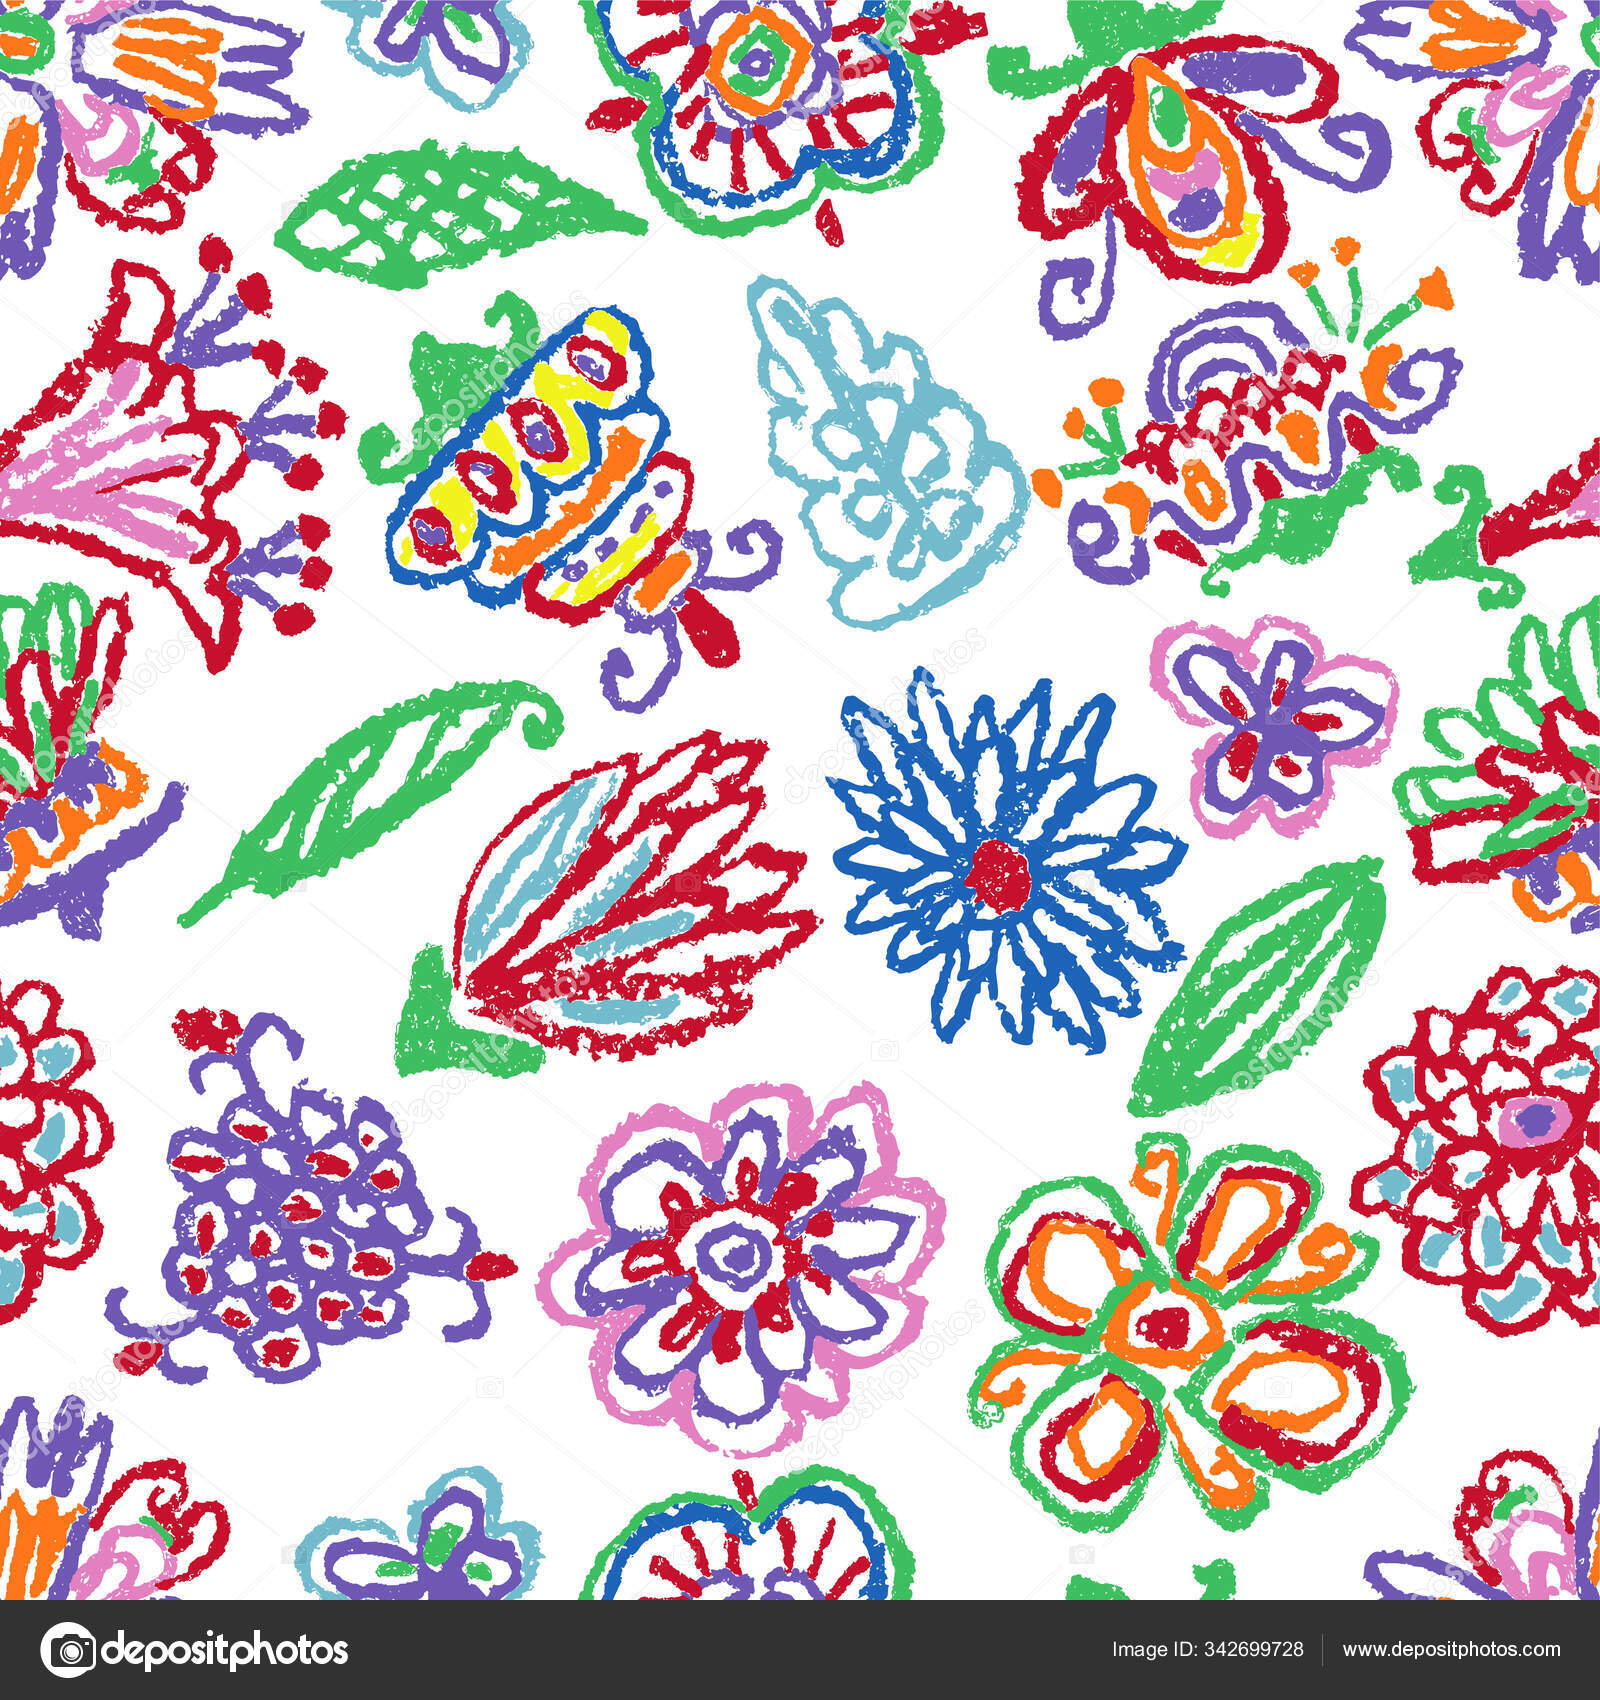 热带奇幻的花无缝图案蜡笔画像小孩的手绘酸色彩艳丽的花朵背景夏天的花或丛林中植物矢量粉笔生动的草地 图库矢量图像 C Larisa Zorina